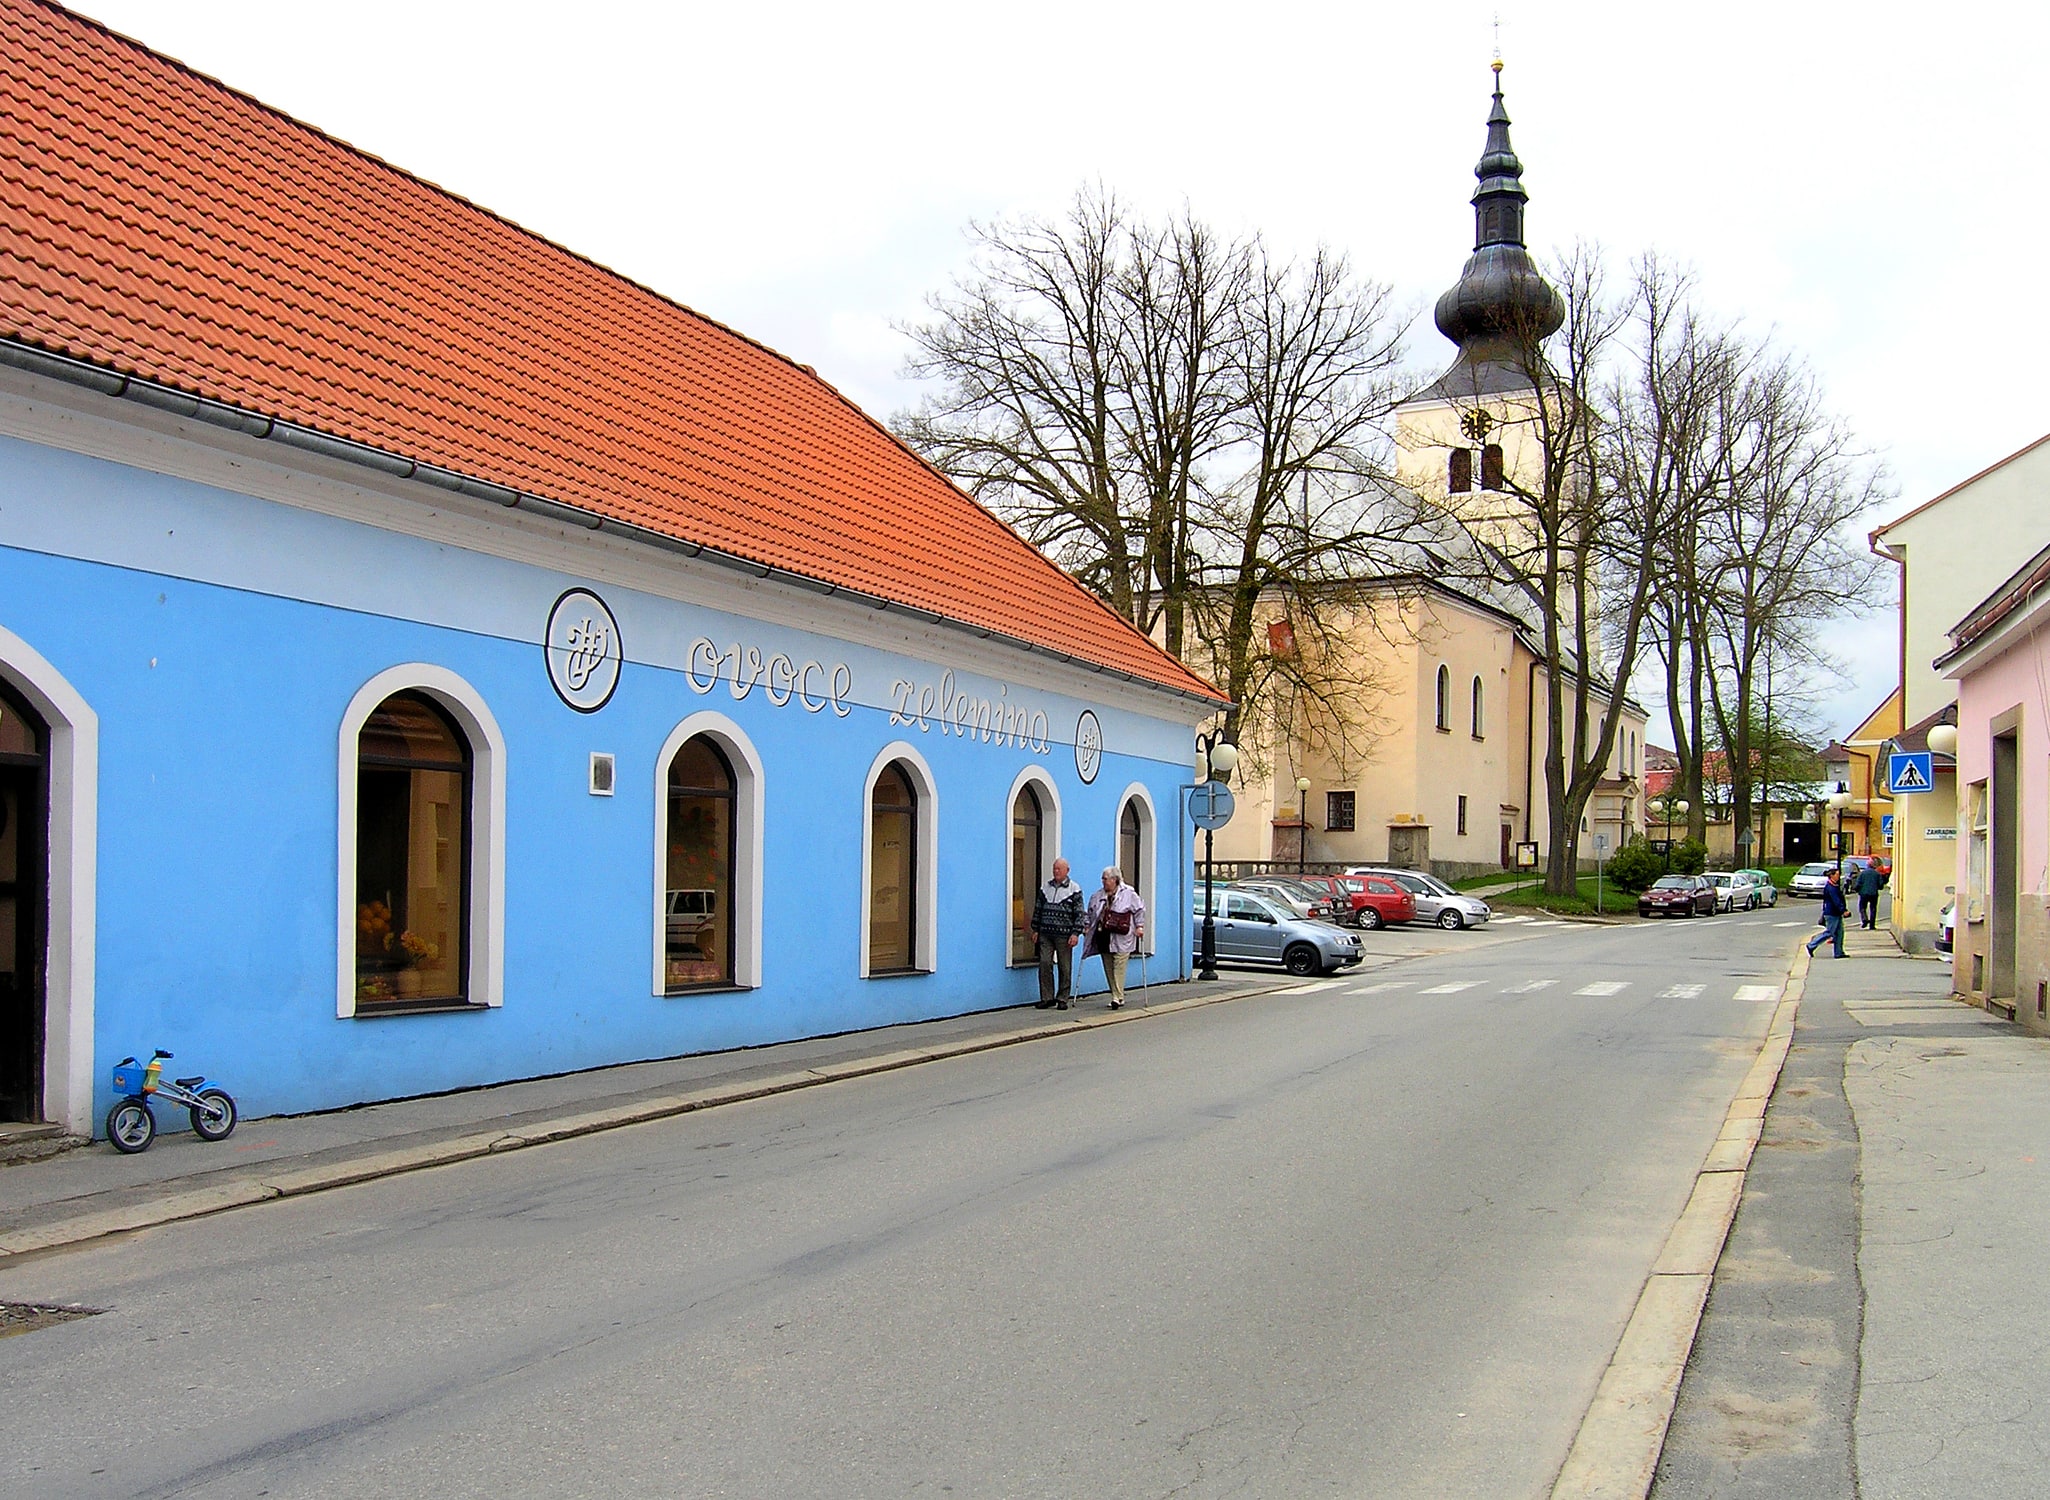 Kamenice nad Lipou, Czech Republic